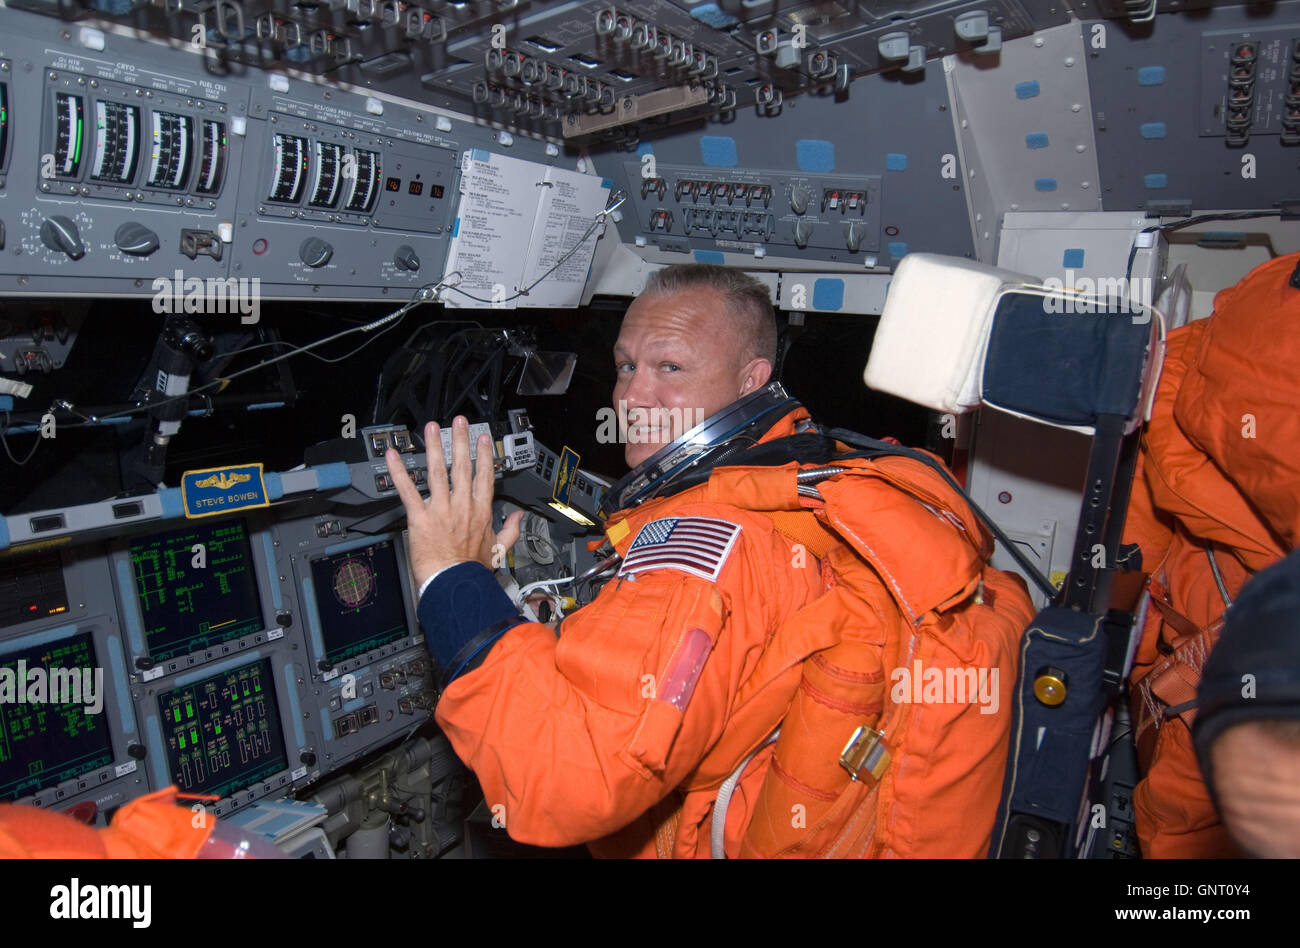 Piloto del transbordador espacial Endeavour, Doug Hurley vistiendo su traje naranja de lanzamiento y entrada en la cubierta de vuelo de avance durante la misión STS-127 el 15 de julio de 2009 en la órbita de la tierra. Foto de stock